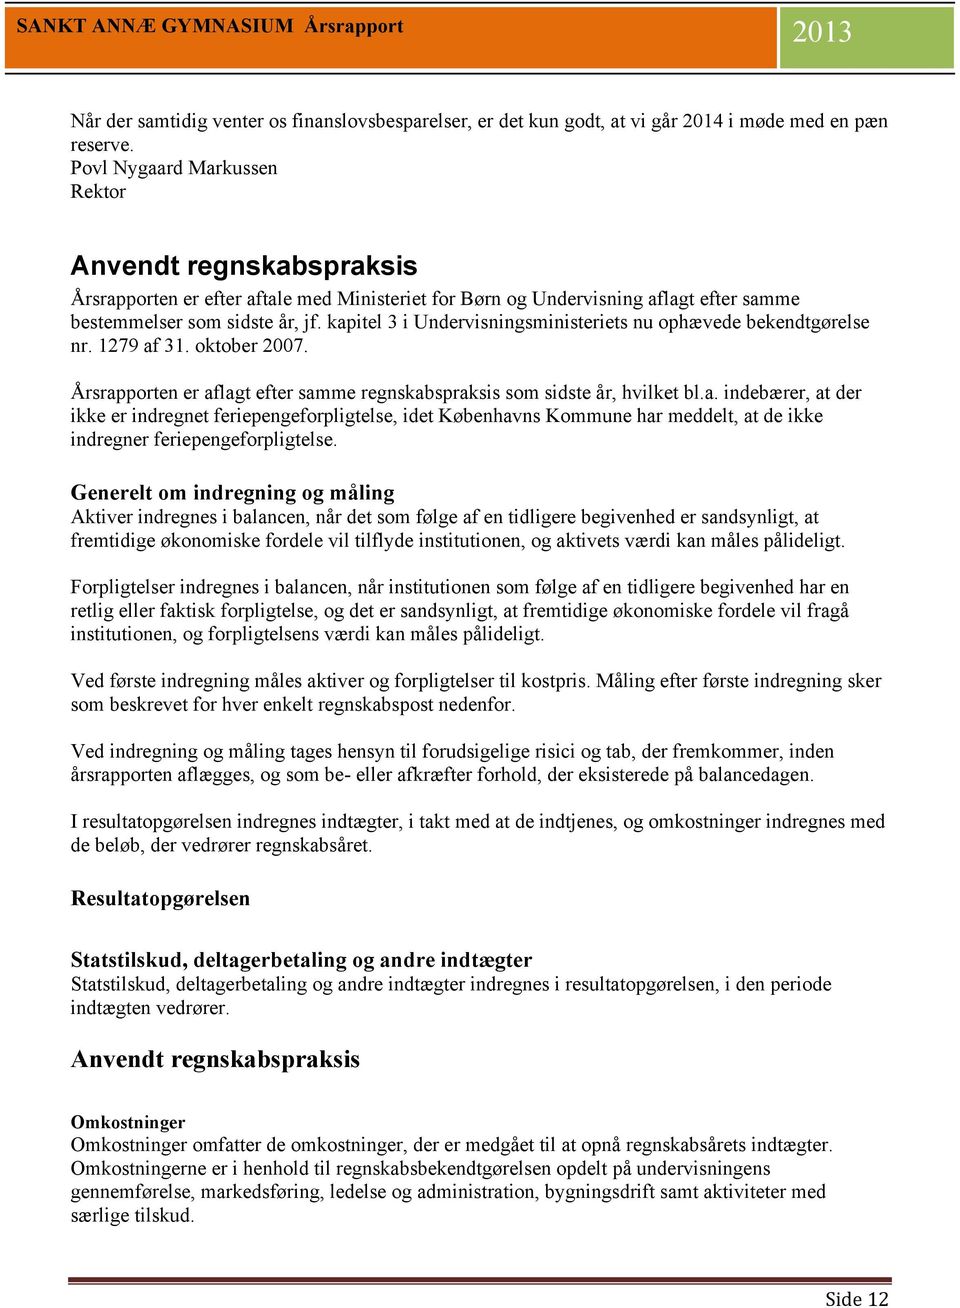 kapitel 3 i Undervisningsministeriets nu ophævede bekendtgørelse nr. 1279 af 31. oktober 2007. Årsrapporten er aflagt efter samme regnskabspraksis som sidste år, hvilket bl.a. indebærer, at der ikke er indregnet feriepengeforpligtelse, idet Københavns Kommune har meddelt, at de ikke indregner feriepengeforpligtelse.